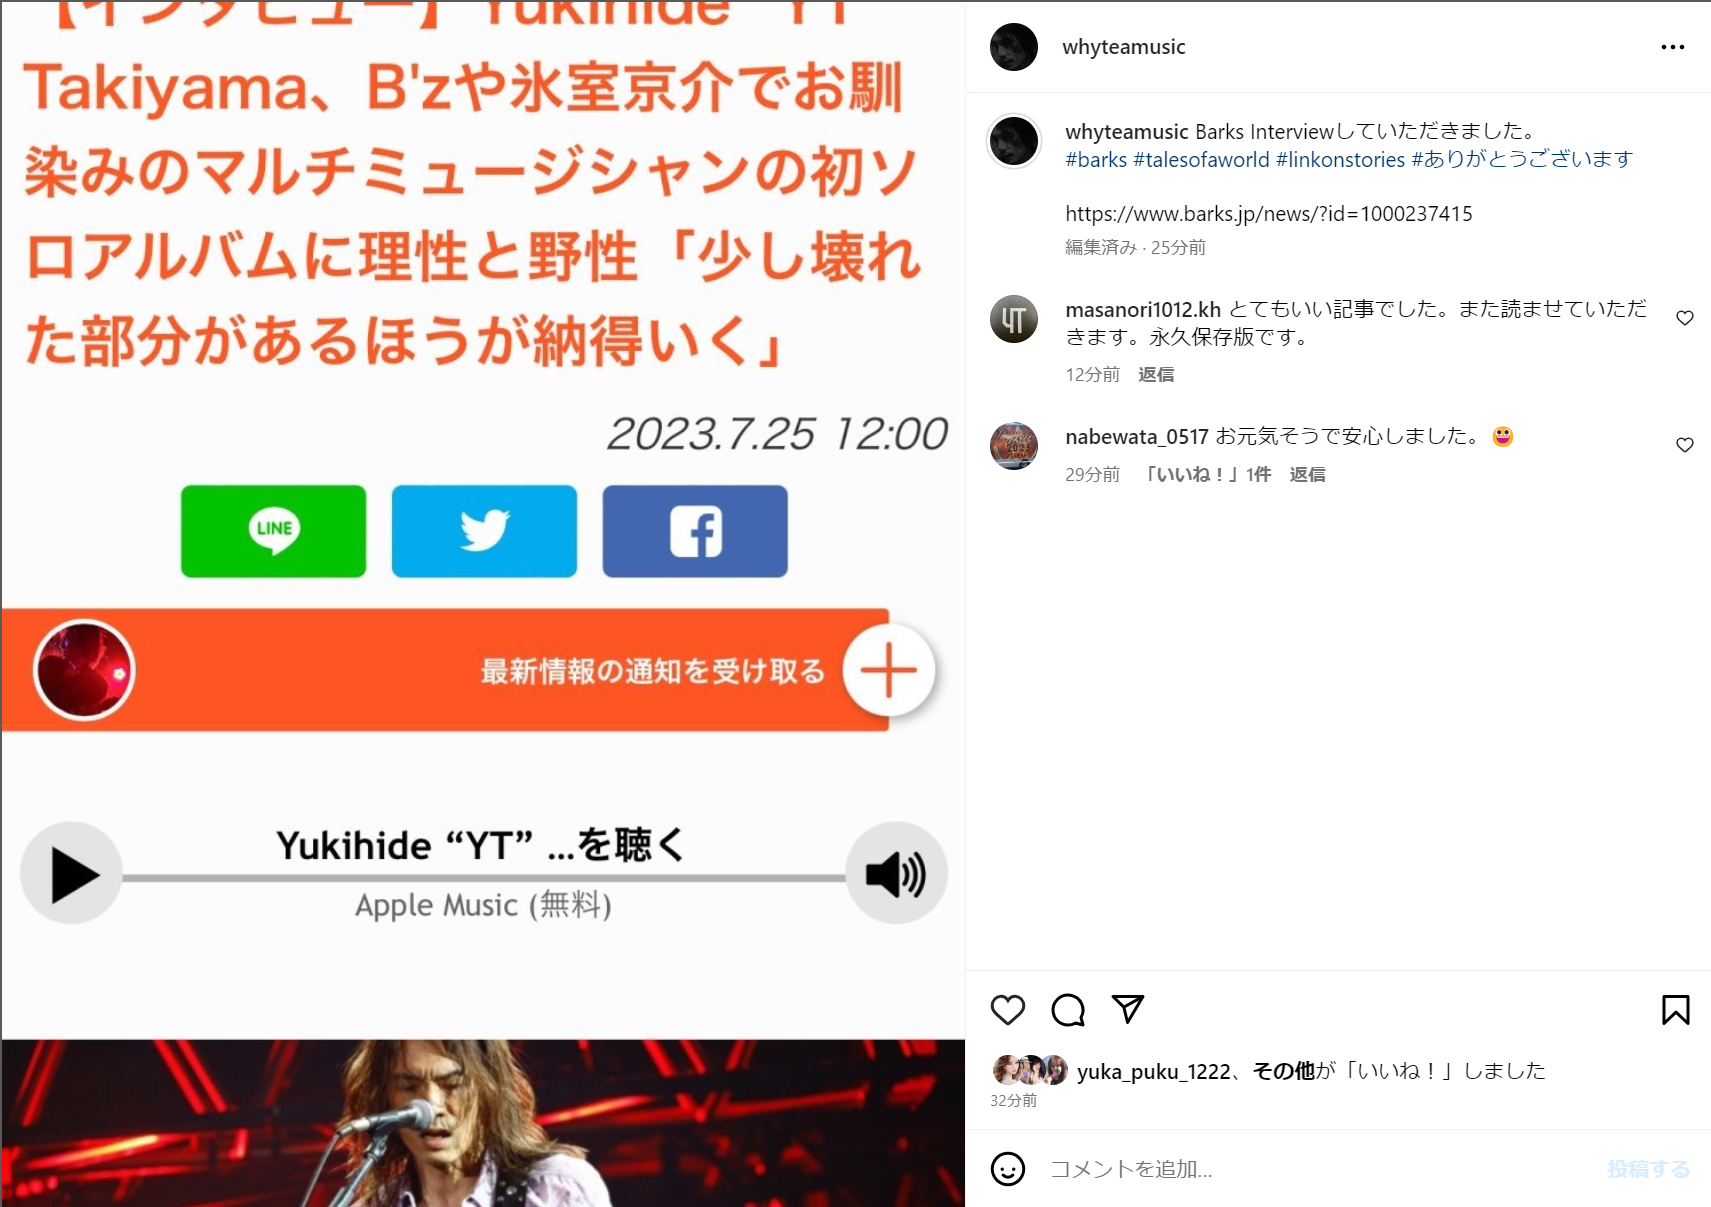 Yukihide "YT" TakiyamaがBARKSによるインタビュー記事を告知したInstagram投稿